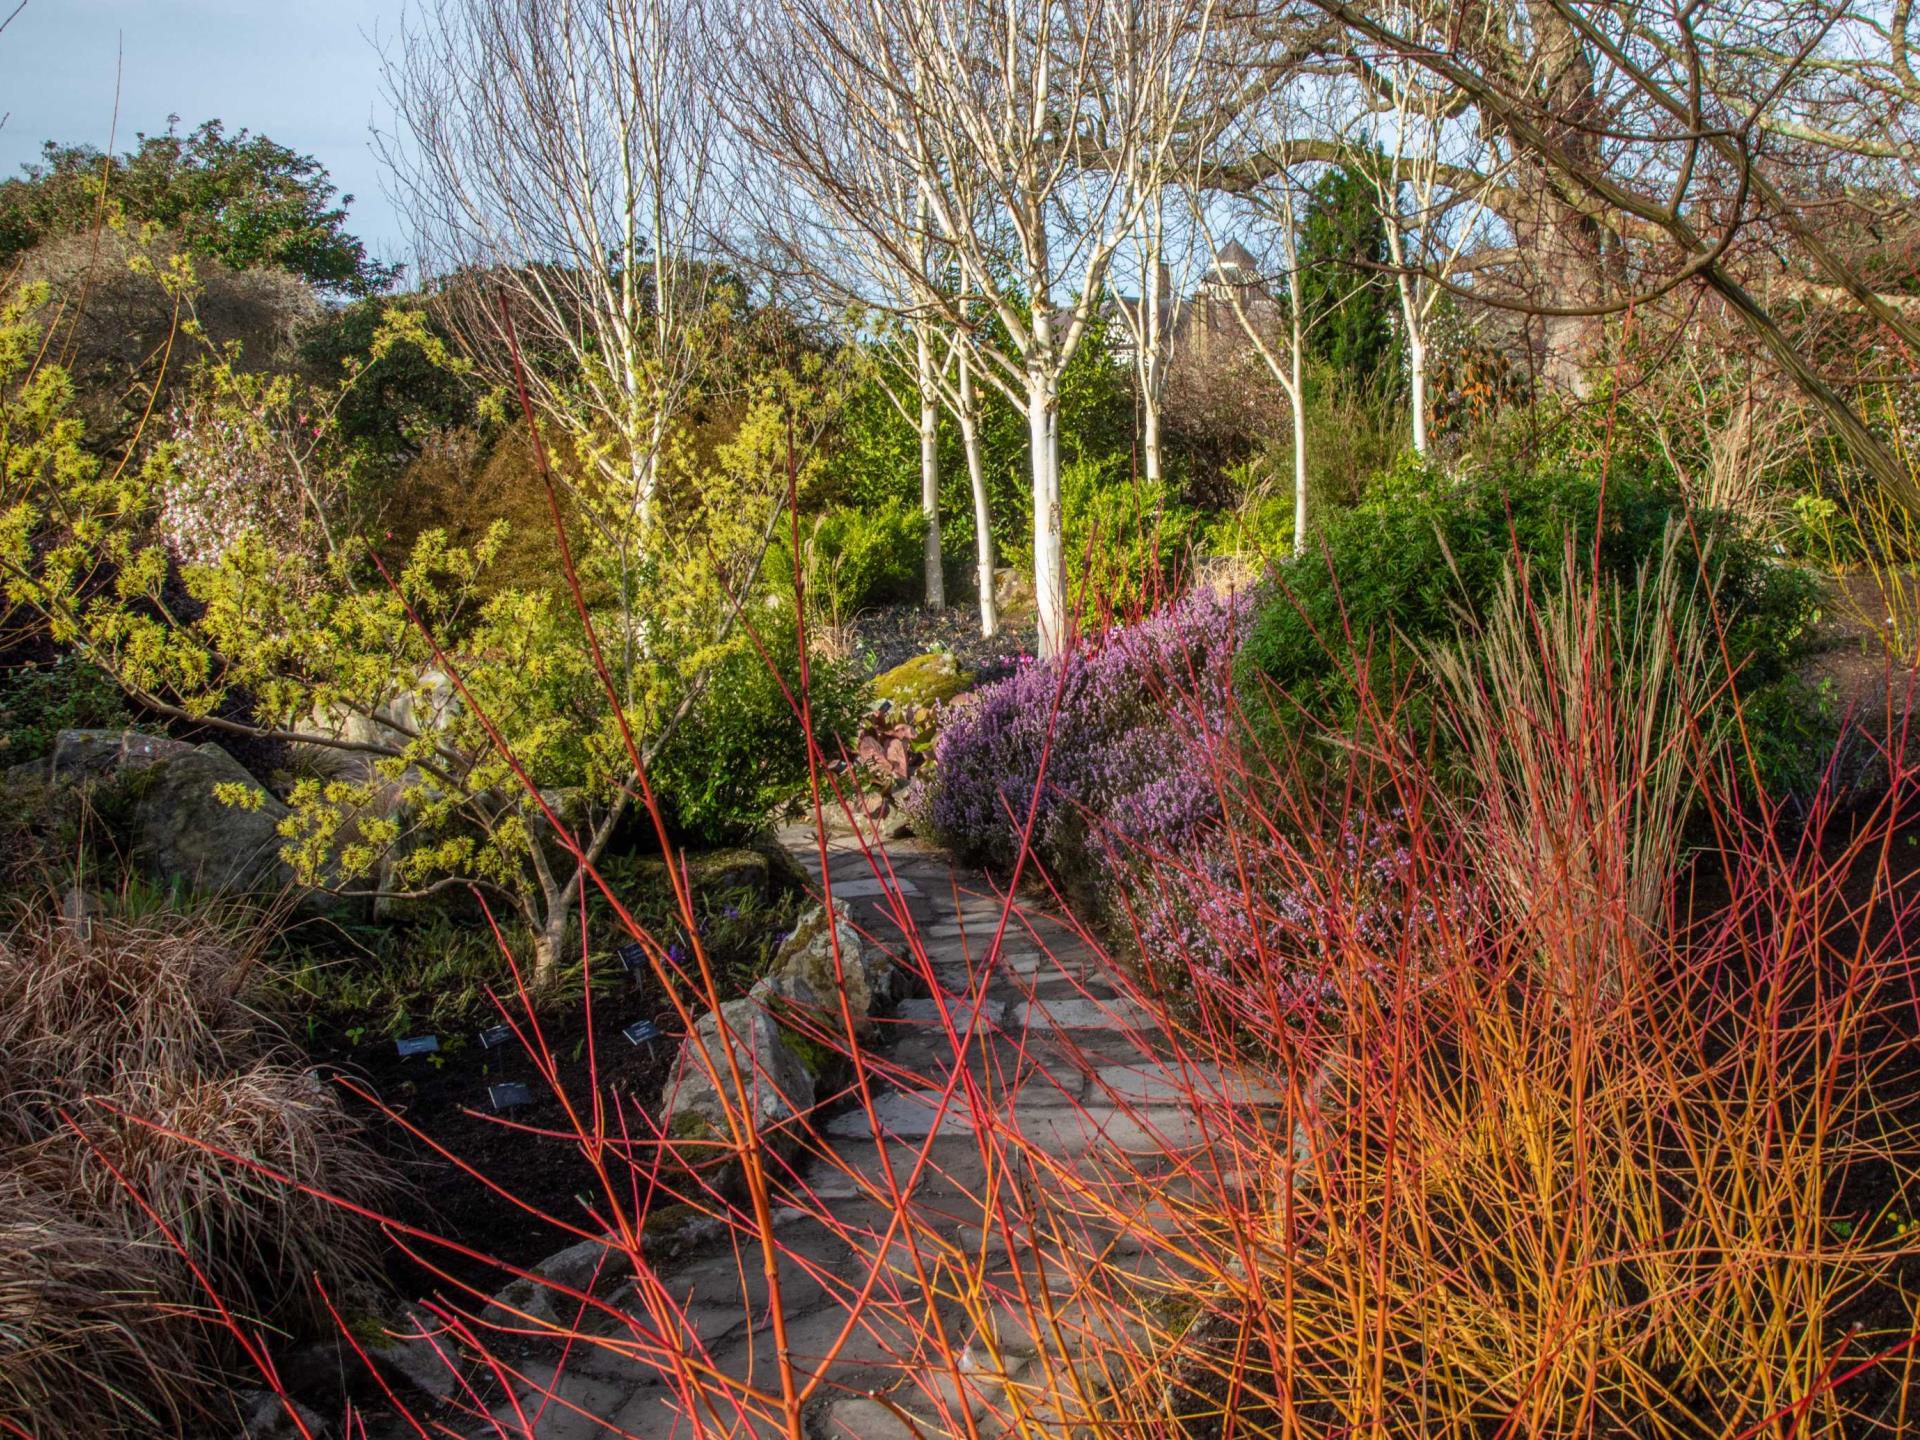 The Winter Garden at Bodnant Garden